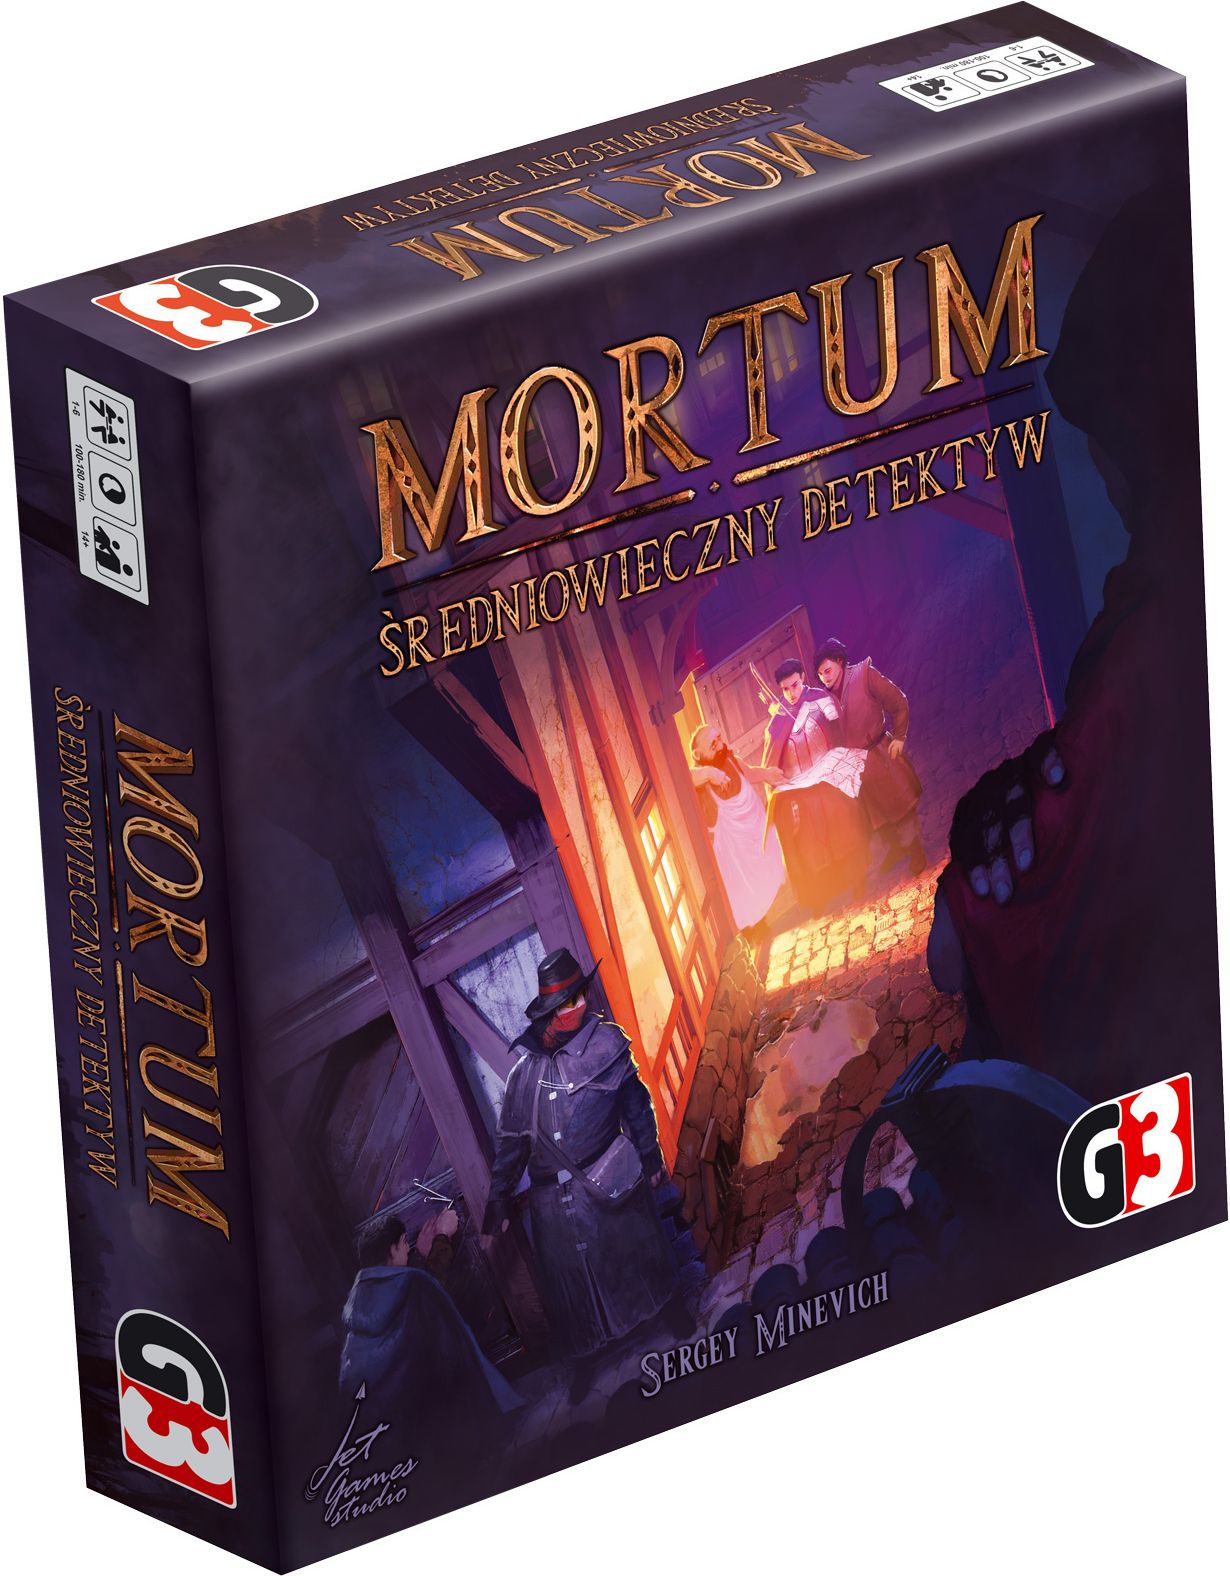 Mortum: Średniowieczny detektyw